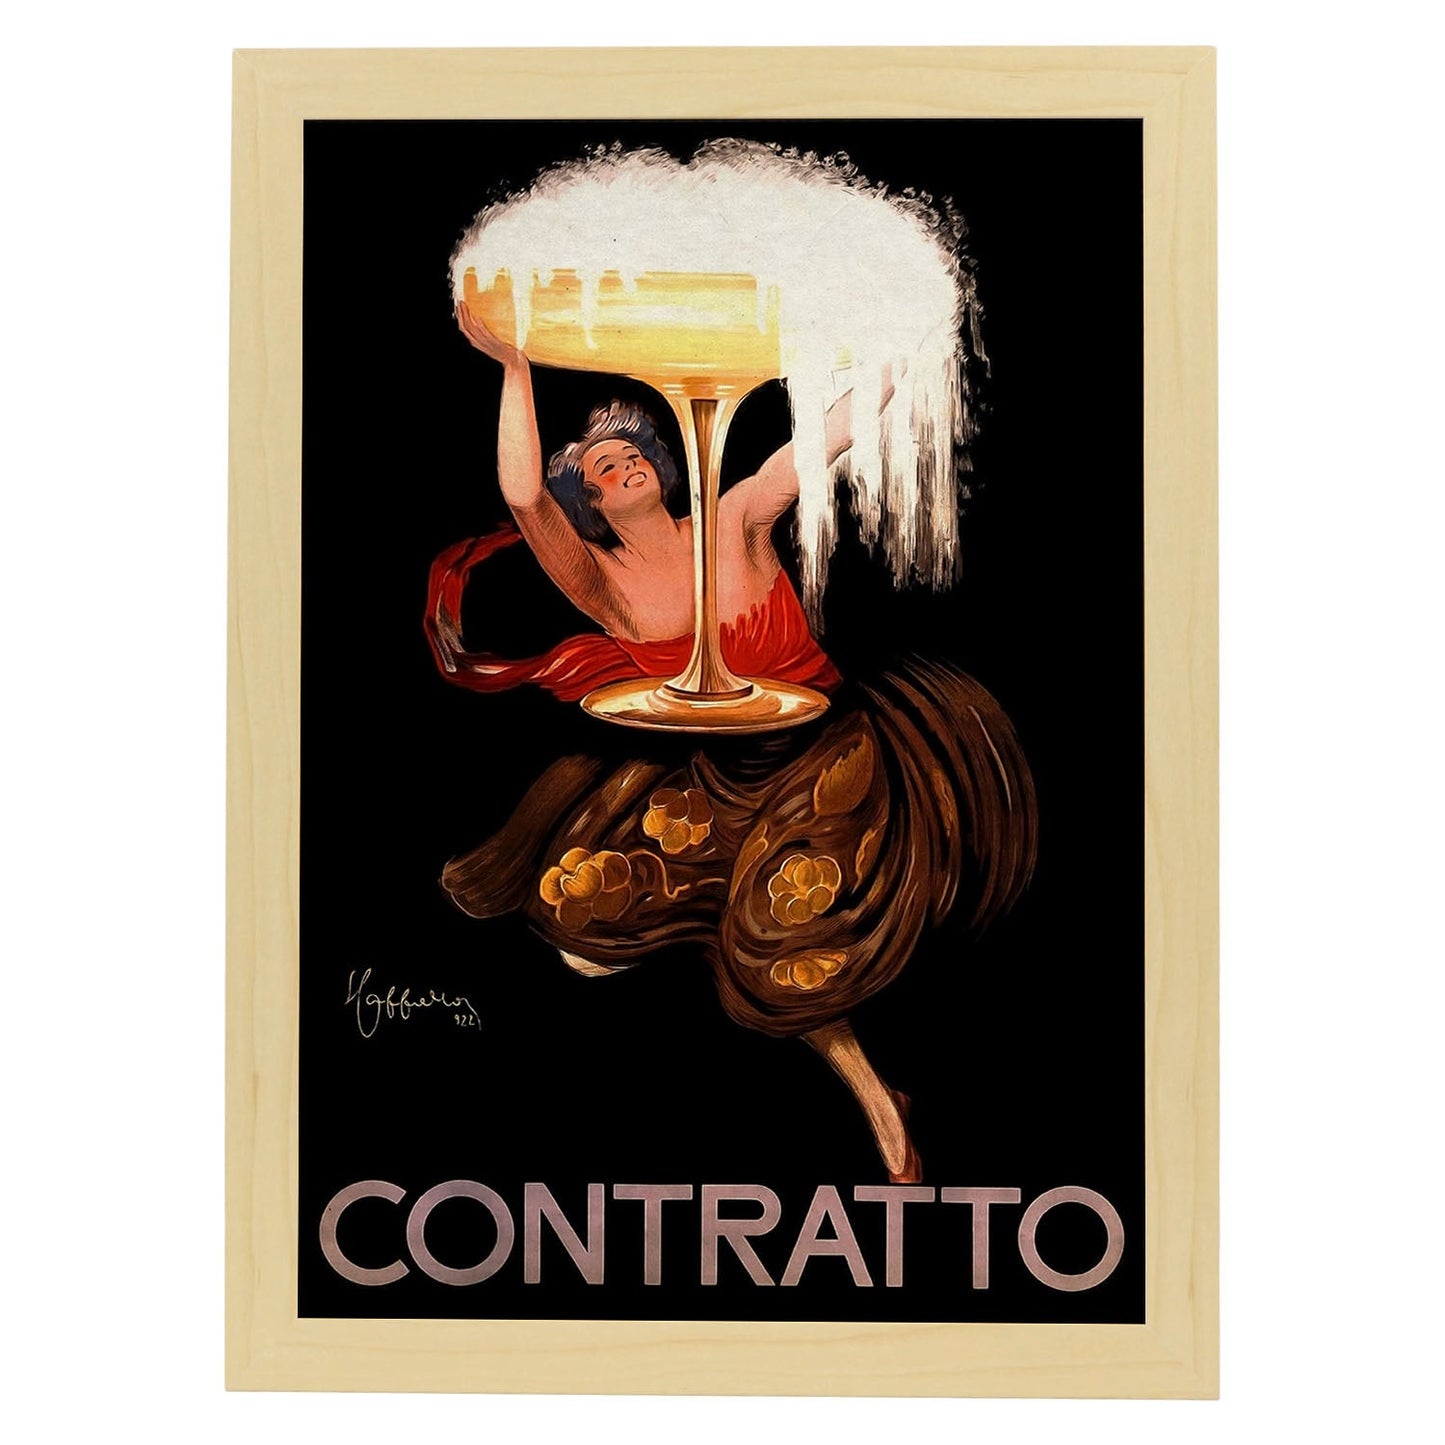 Poster vintage de Contratto. con imágenes vintage y de publicidad antigua.-Artwork-Nacnic-A3-Marco Madera clara-Nacnic Estudio SL